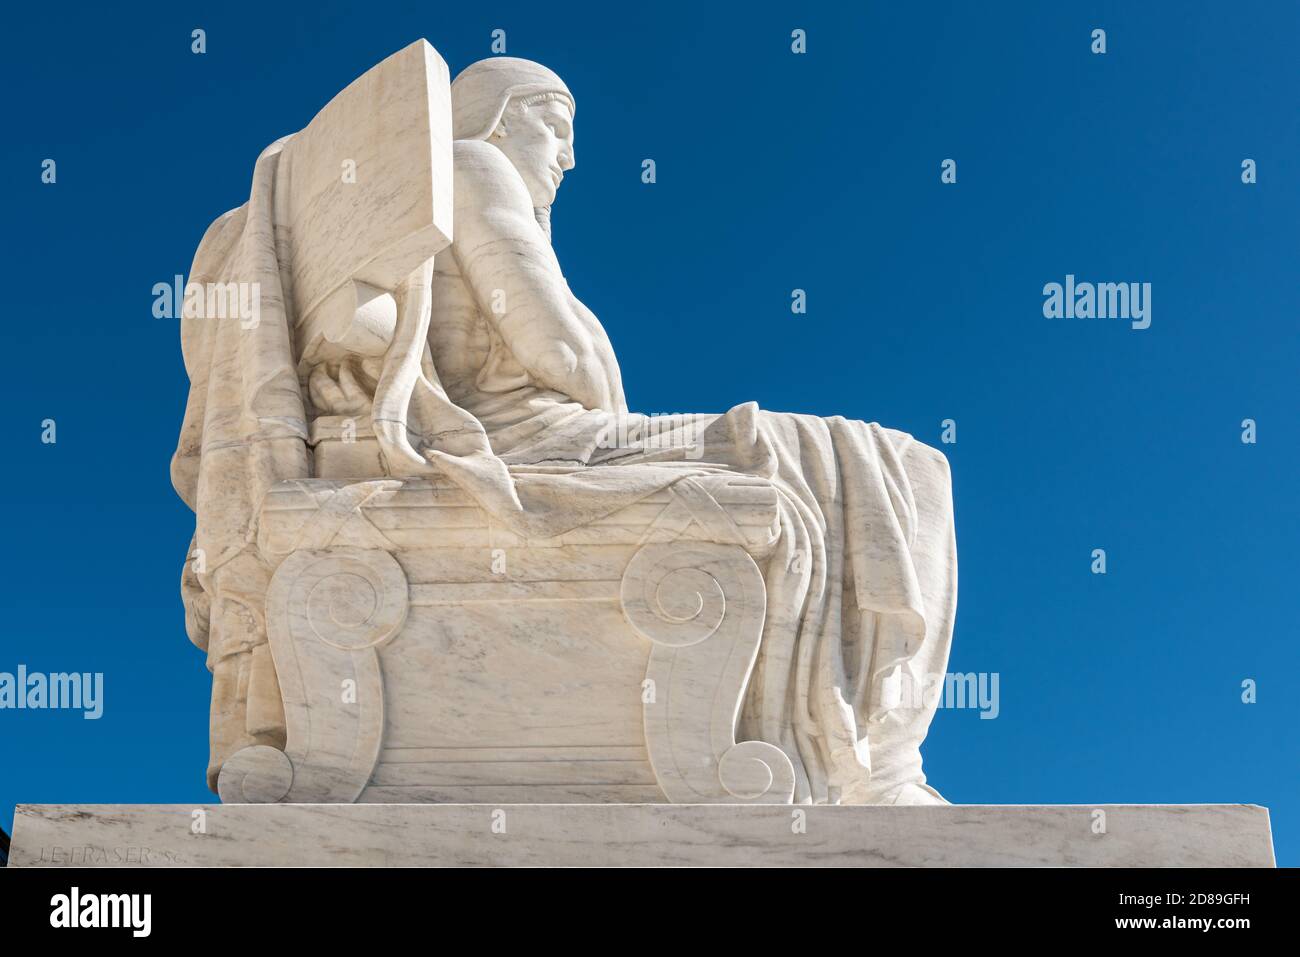 Statue de James Earle Fraser « Autorité de droit » par la Cour suprême des États-Unis sur Capitol Hill à Washington DC. Banque D'Images